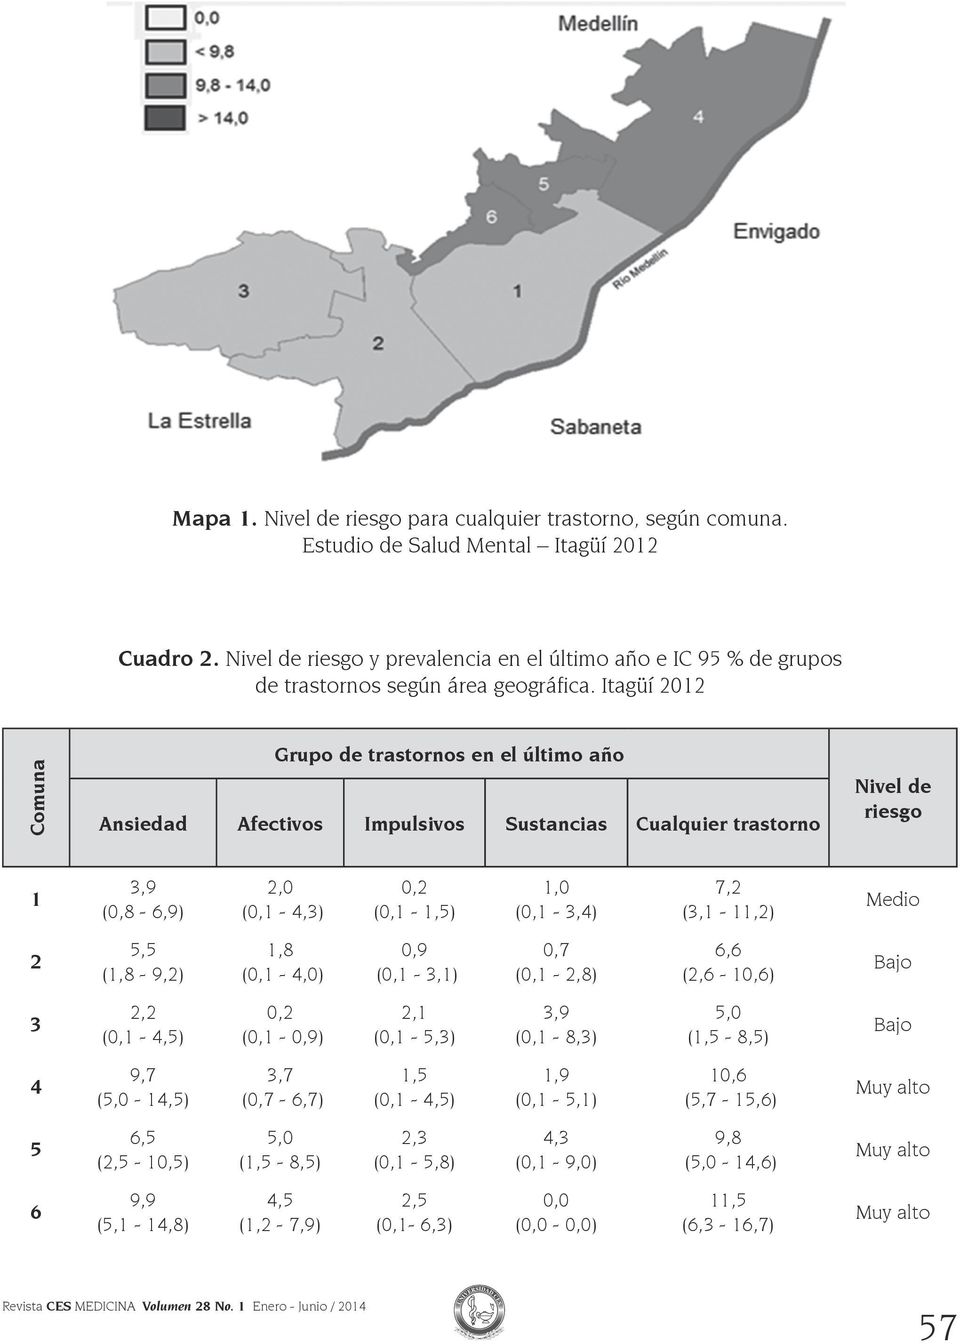 Itagüí 2012 Comuna Grupo de trastornos en el último año Ansiedad Afectivos Impulsivos Sustancias Cualquier trastorno Nivel de riesgo 1 3,9 (0,8-6,9) 2,0 (0,1-4,3) 0,2 (0,1-1,5) 1,0 (0,1-3,4) 7,2